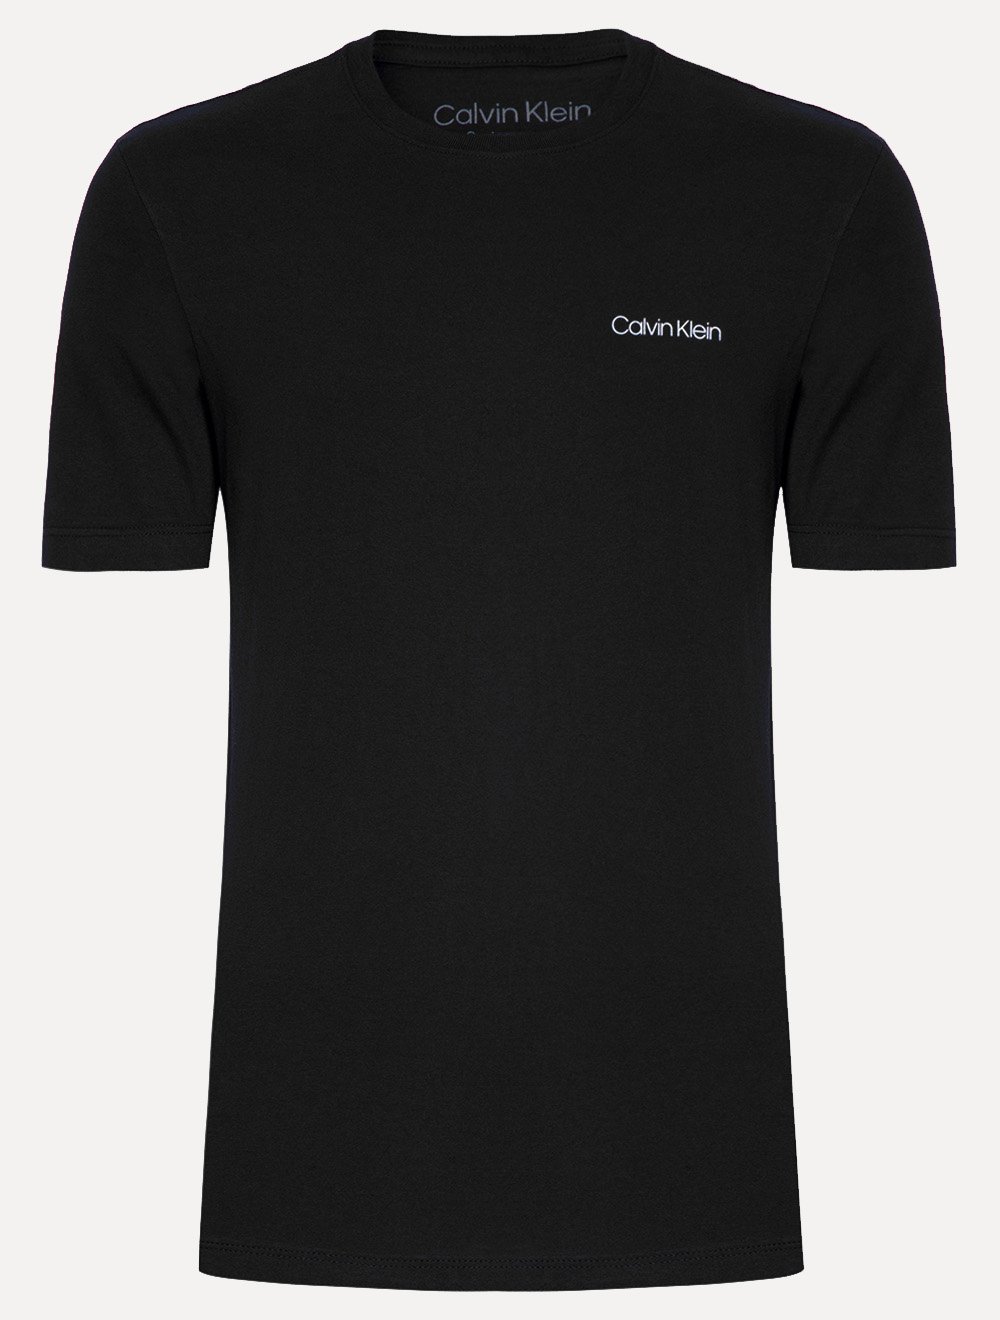 Camiseta Calvin Klein Masculina Meia Malha Dark CK Preta 